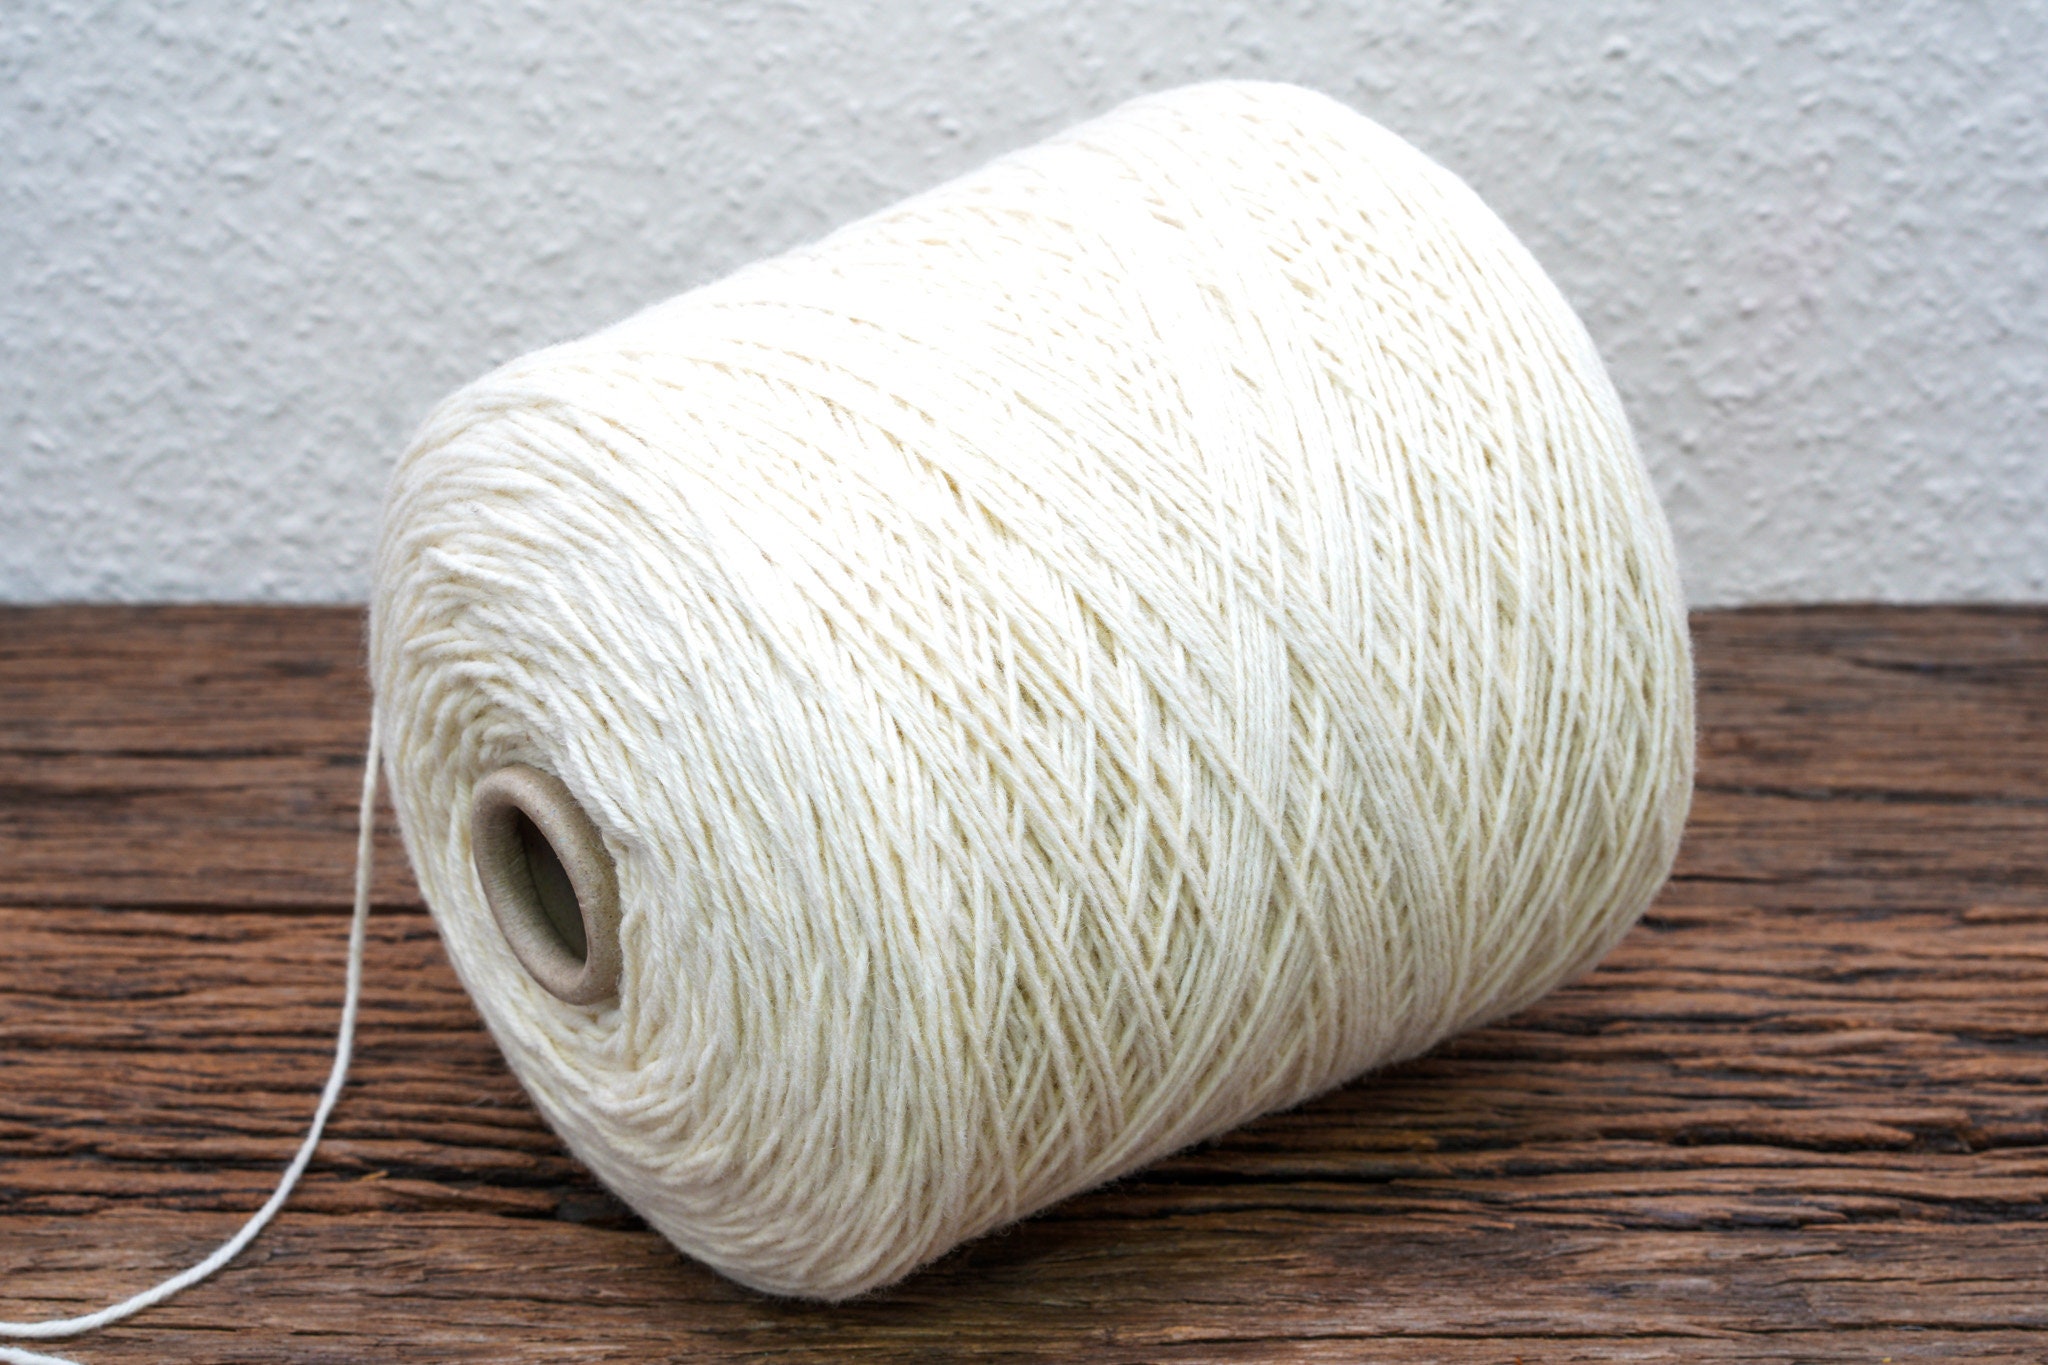 Grey-brown undyed wool yarn in cone - 500 g/550m